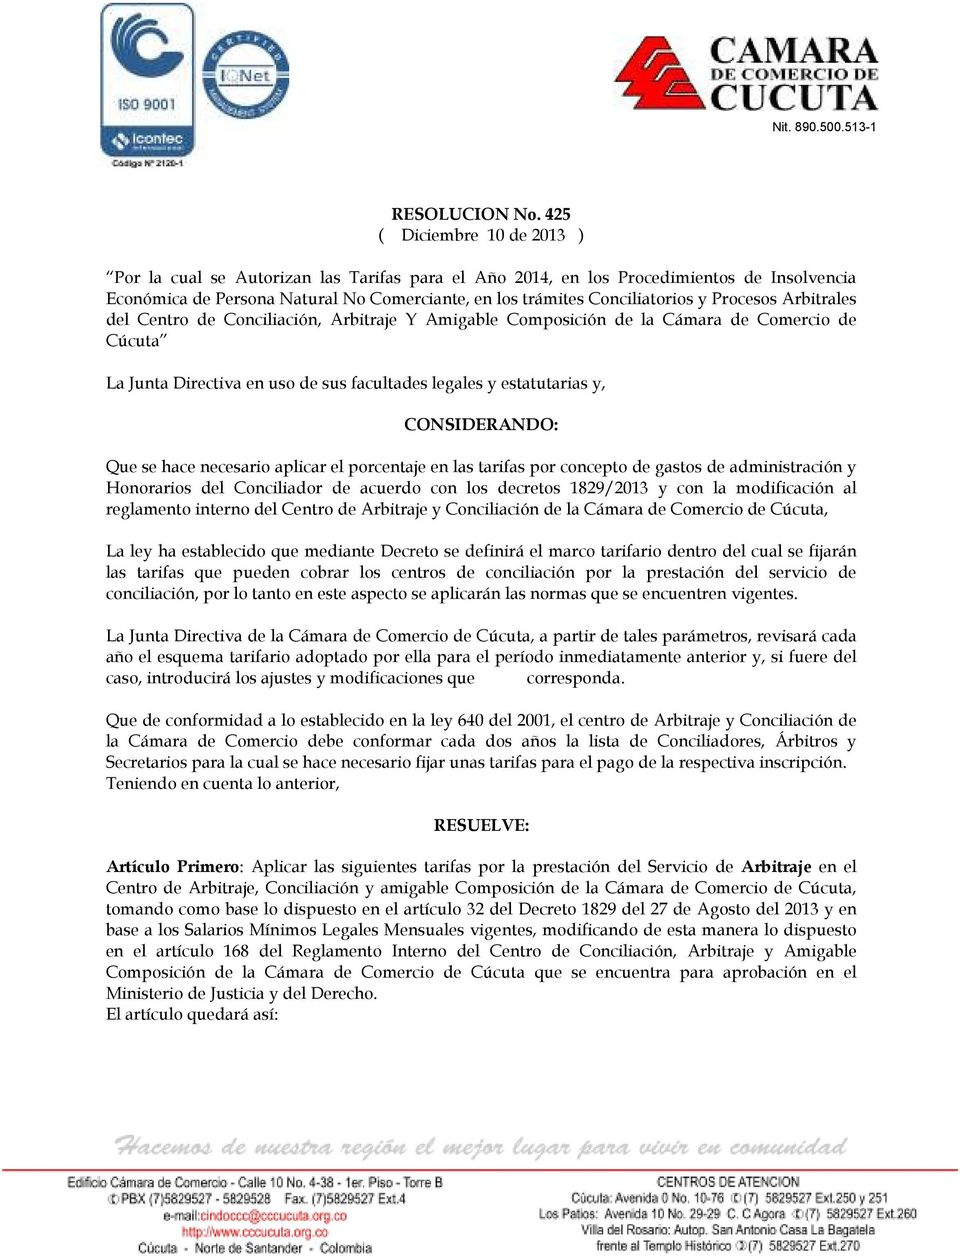 Procesos Arbitrales del Centro de Conciliación, Arbitraje Y Amigable Composición de la Cámara de Comercio de Cúcuta La Junta Directiva en uso de sus facultades legales y estatutarias y, CONSIDERANDO: